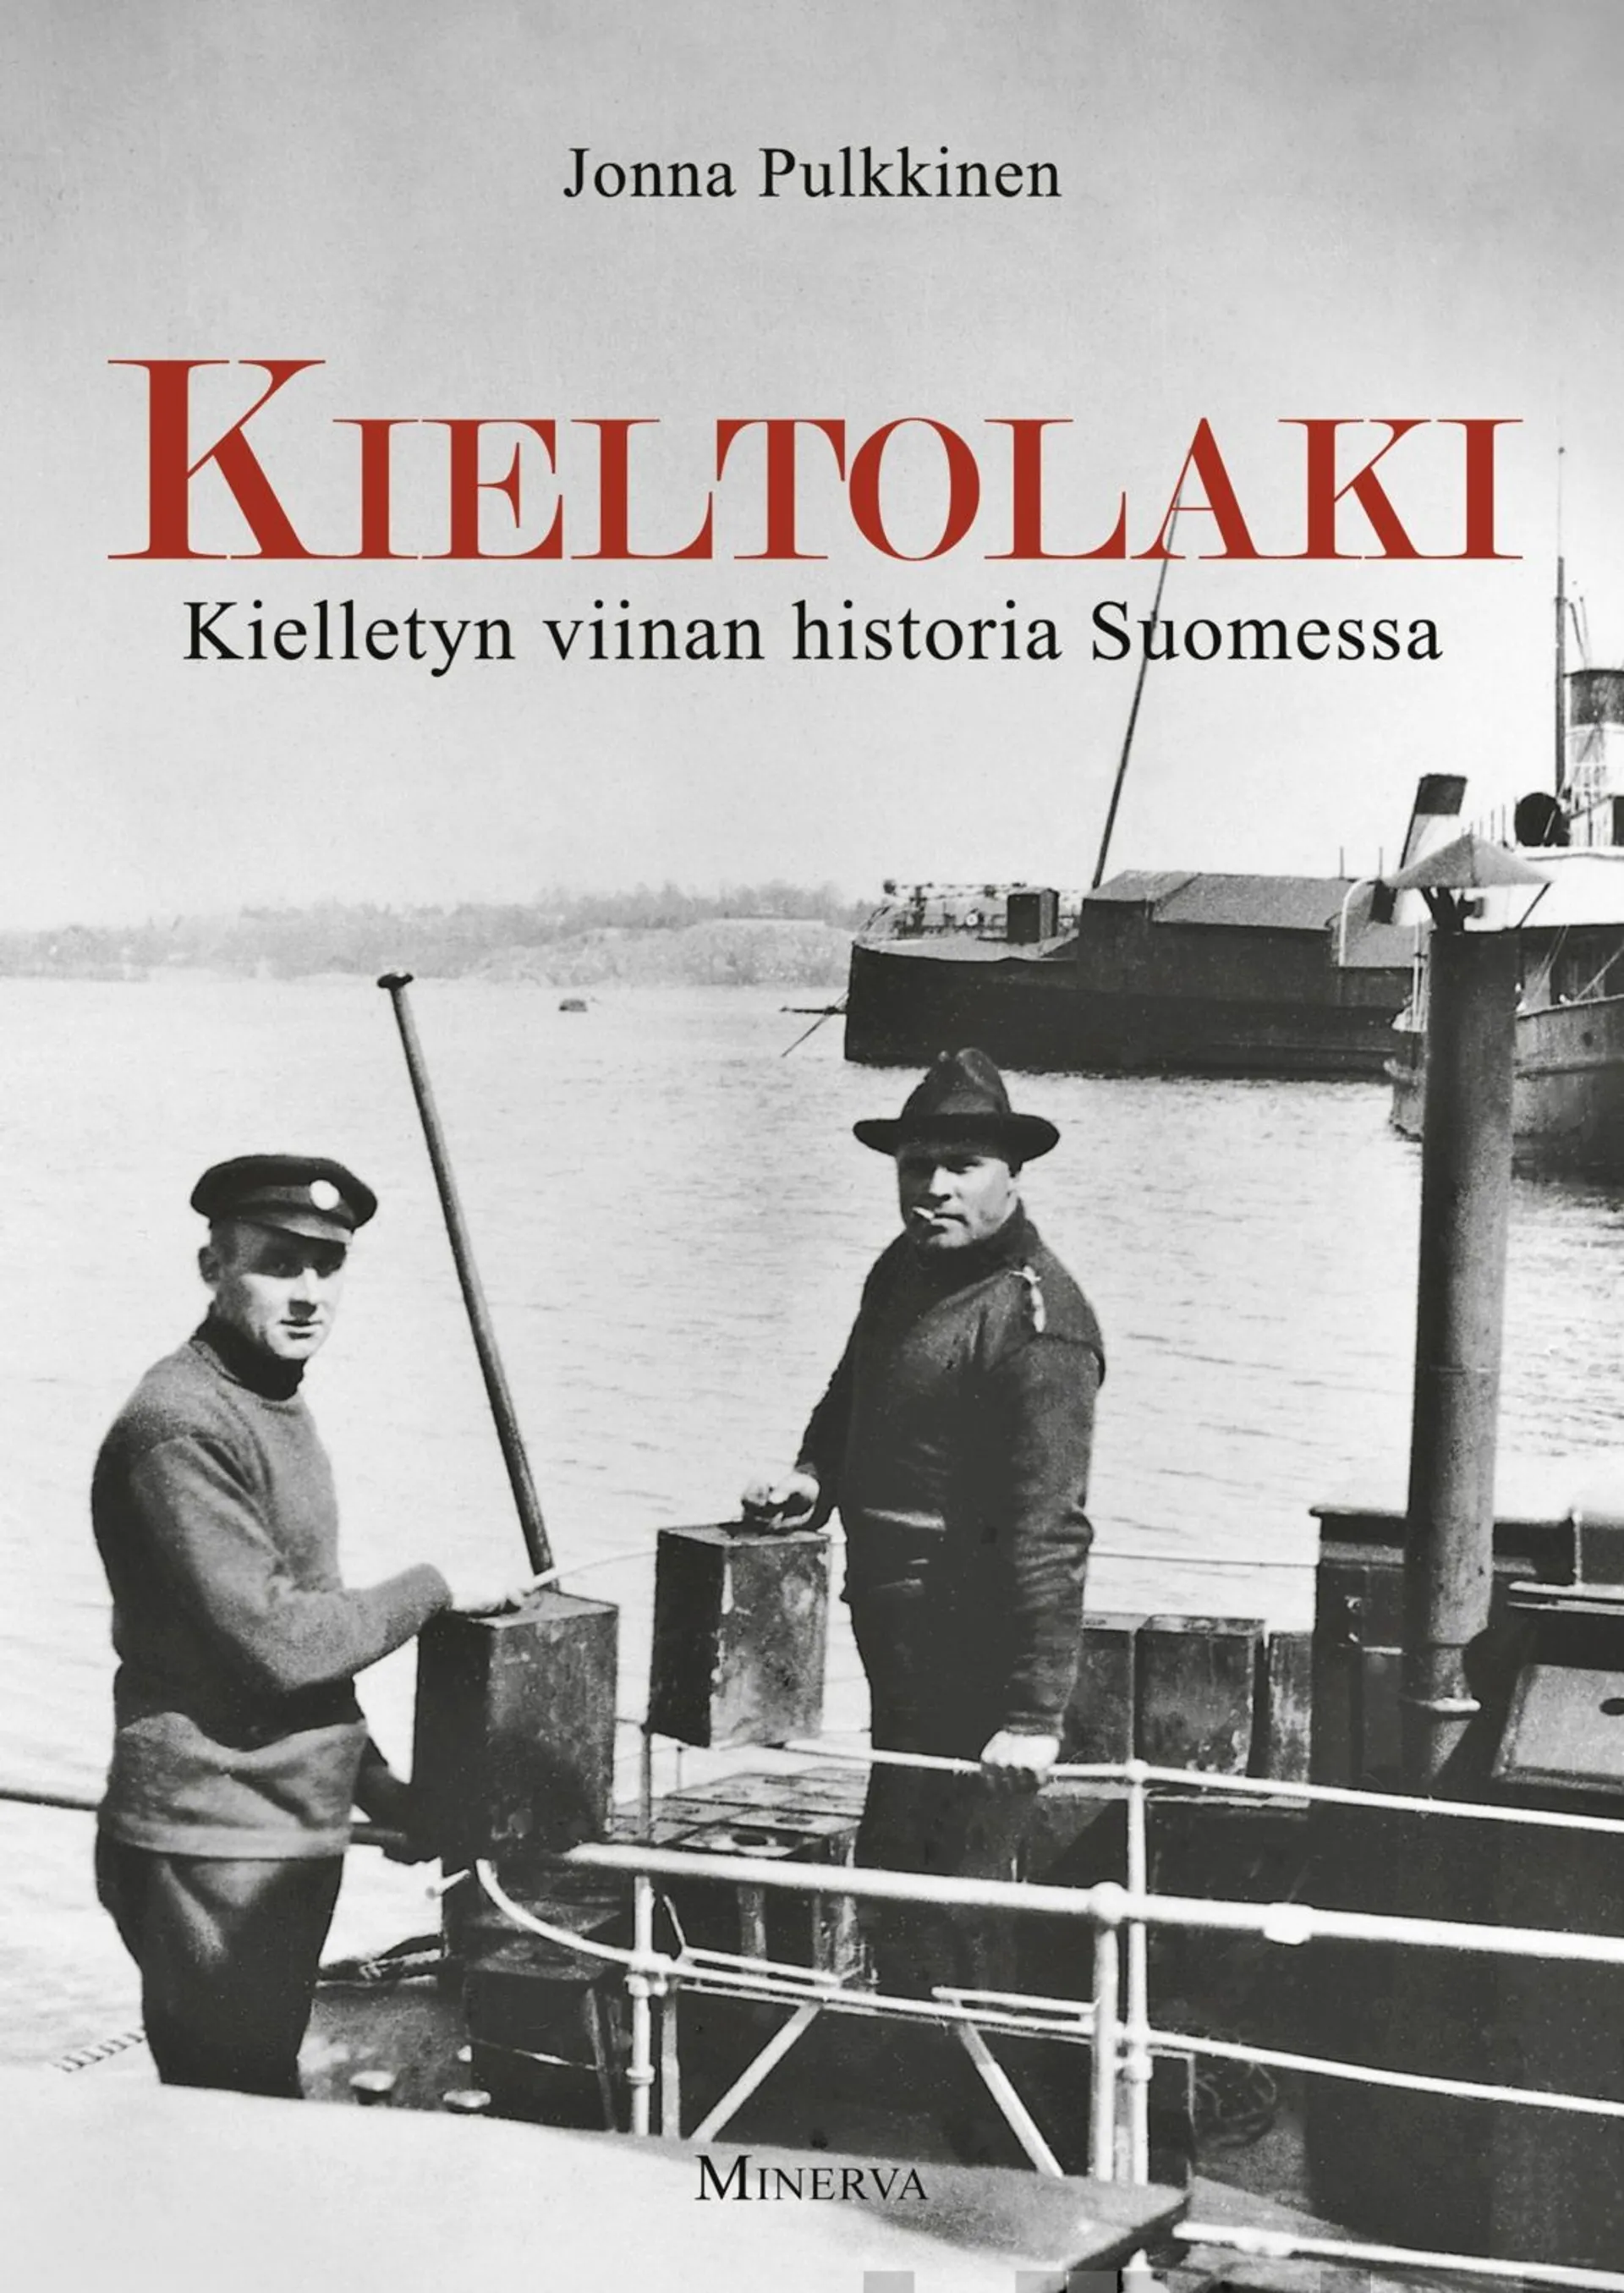 Pulkkinen, Kieltolaki - Kielletyn viinan historia Suomessa